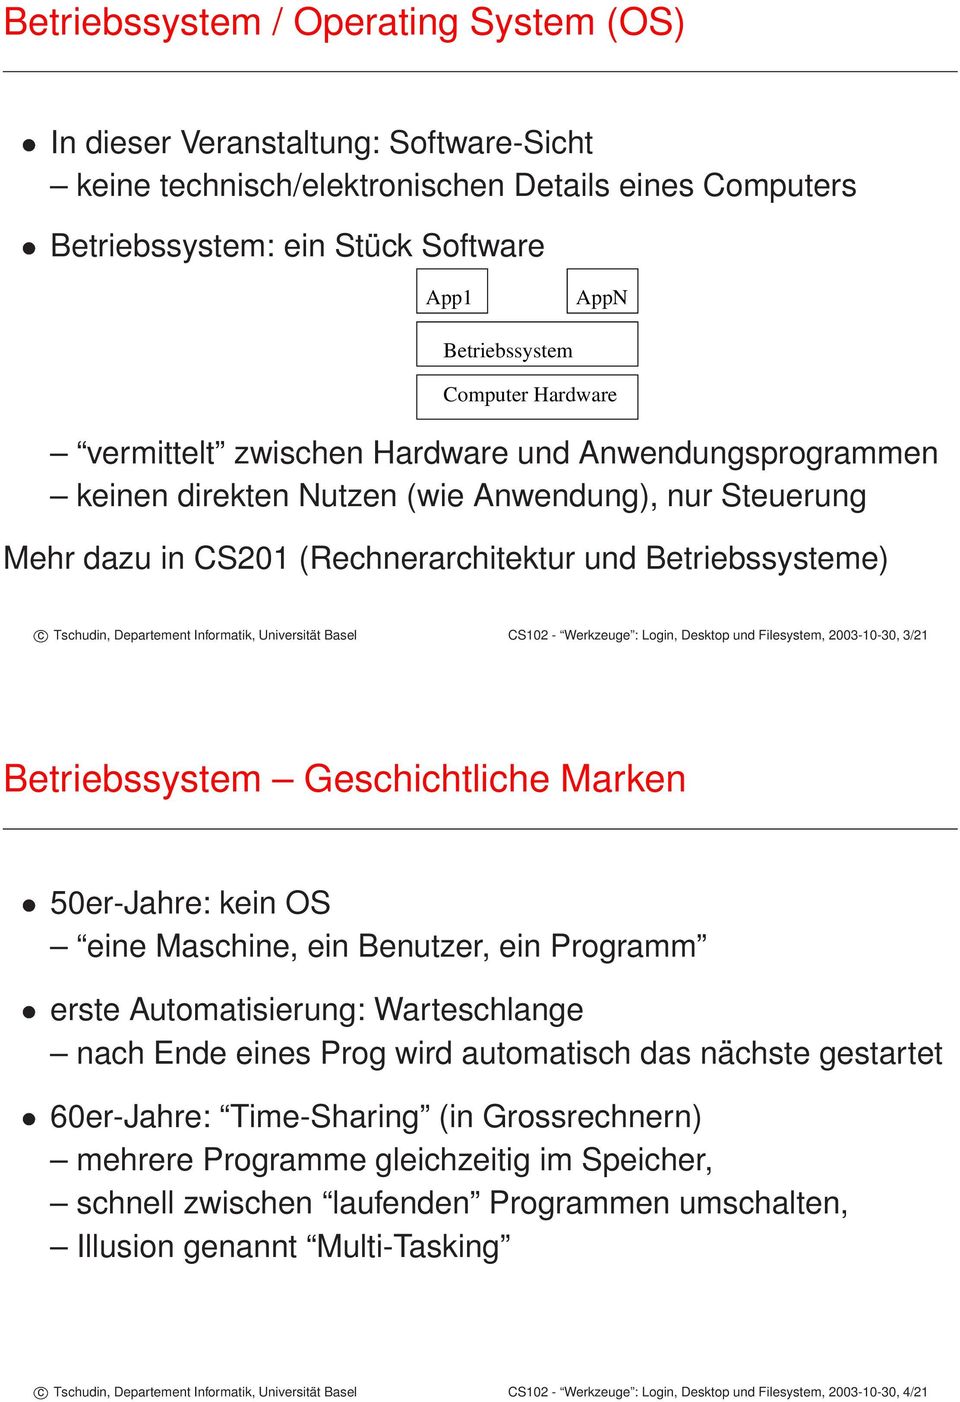 Departement Informatik, Universität Basel CS102 - Werkzeuge : Login, Desktop und Filesystem, 2003-10-30, 3/21 Betriebssystem Geschichtliche Marken 50er-Jahre: kein OS eine Maschine, ein Benutzer, ein